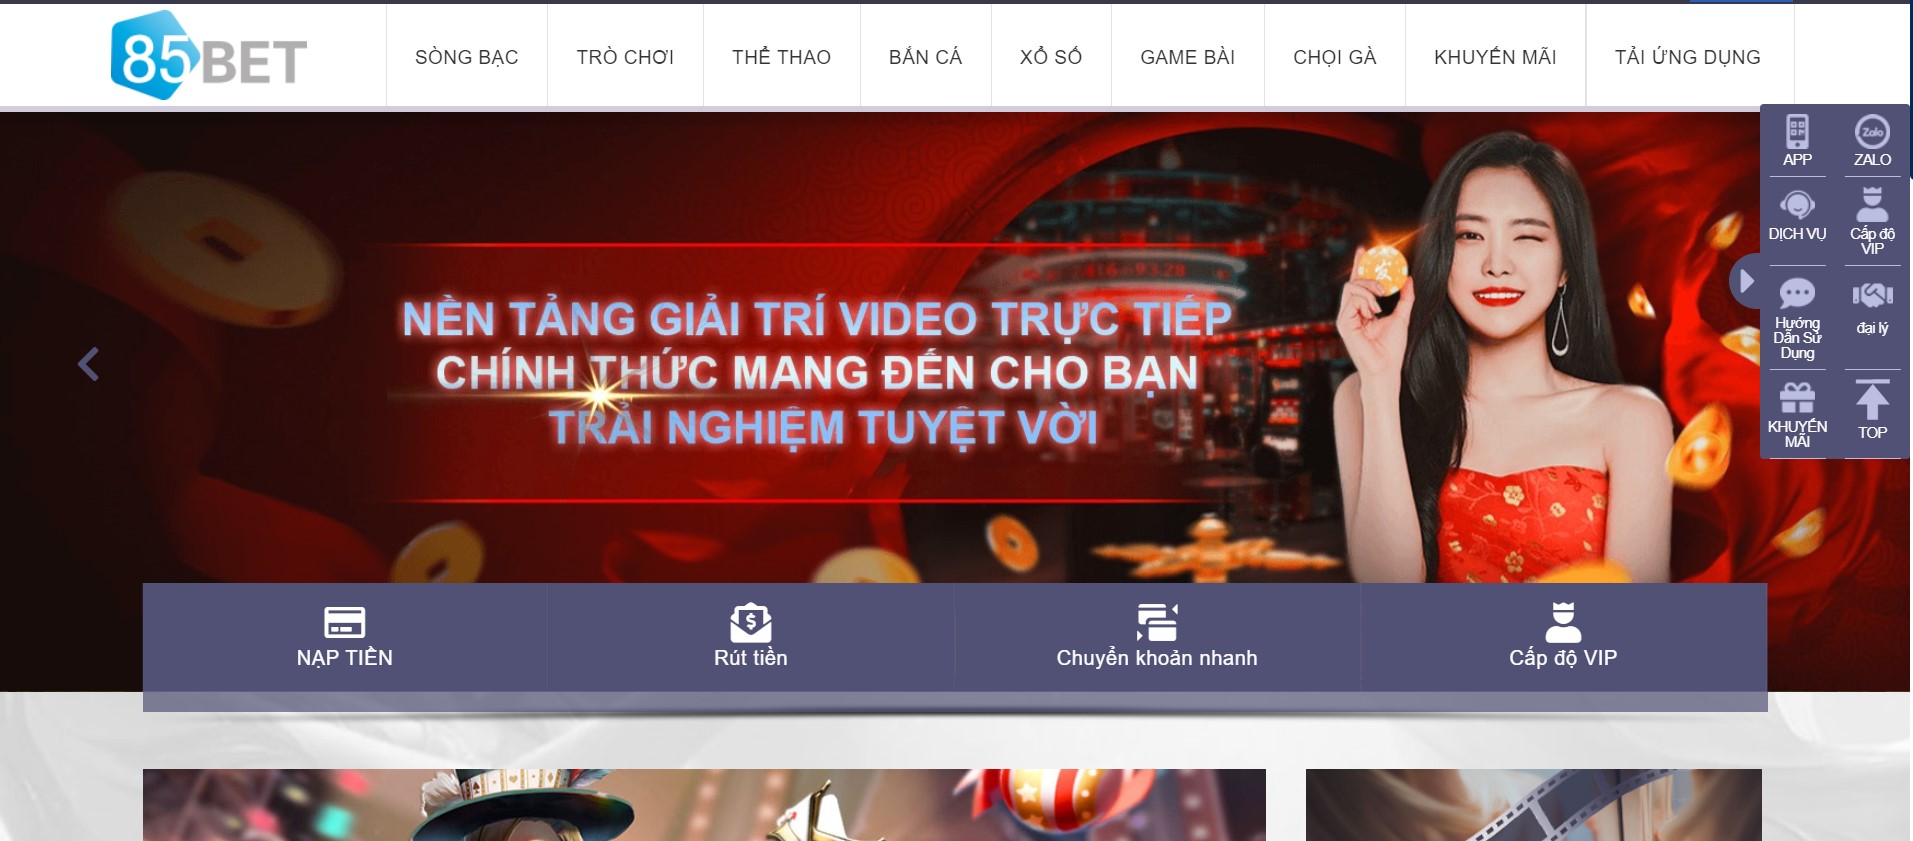 85bet - Địa chỉ cá cược bóng đá trực tuyến uy tín tại Việt Nam